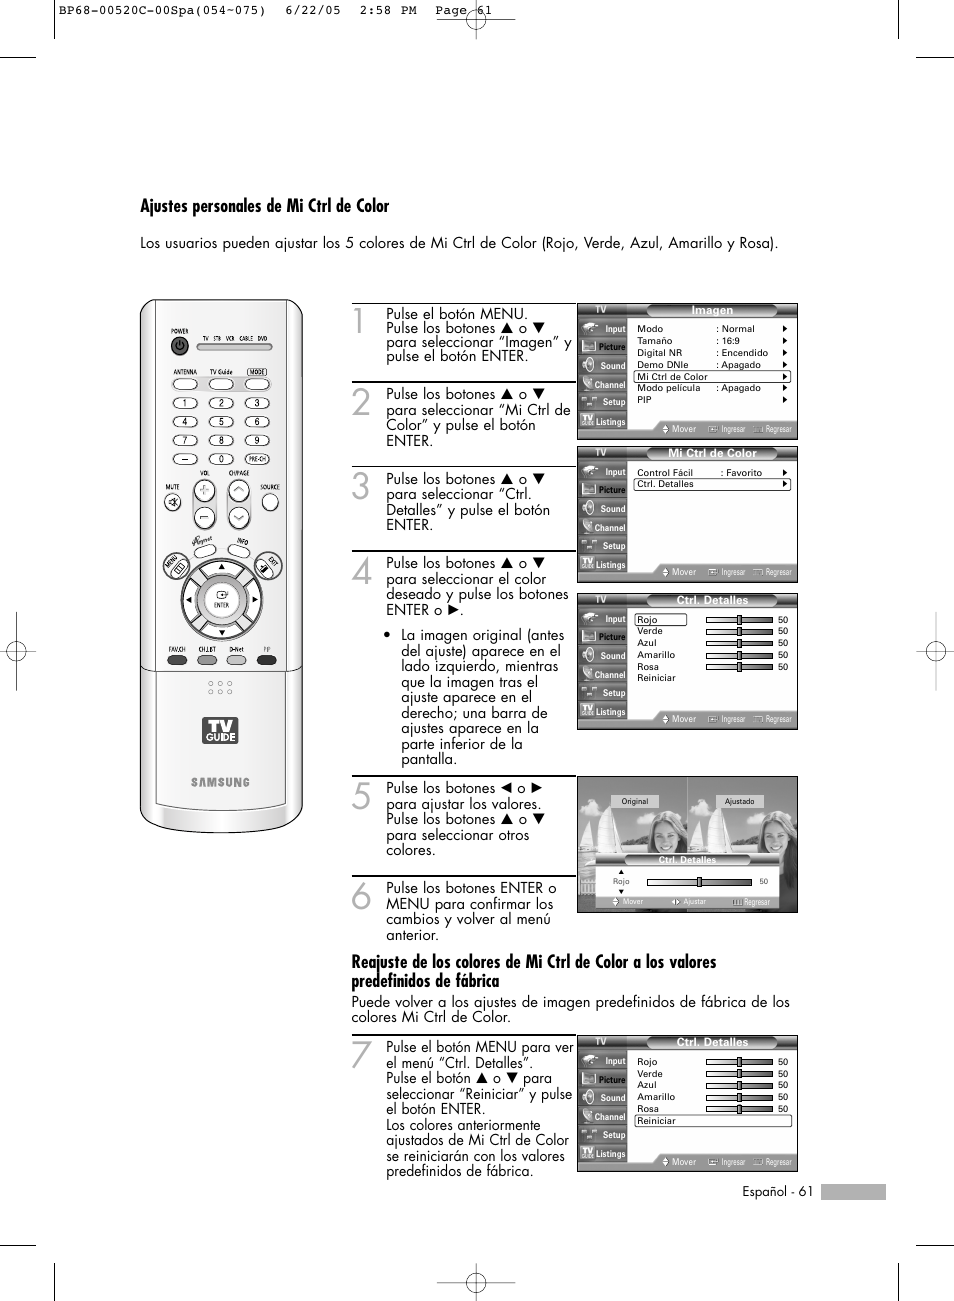 Ajustes personales de mi ctrl de color | Samsung ESPAOL - 2 HL-R6768W Manual del usuario | Página 61 / 144